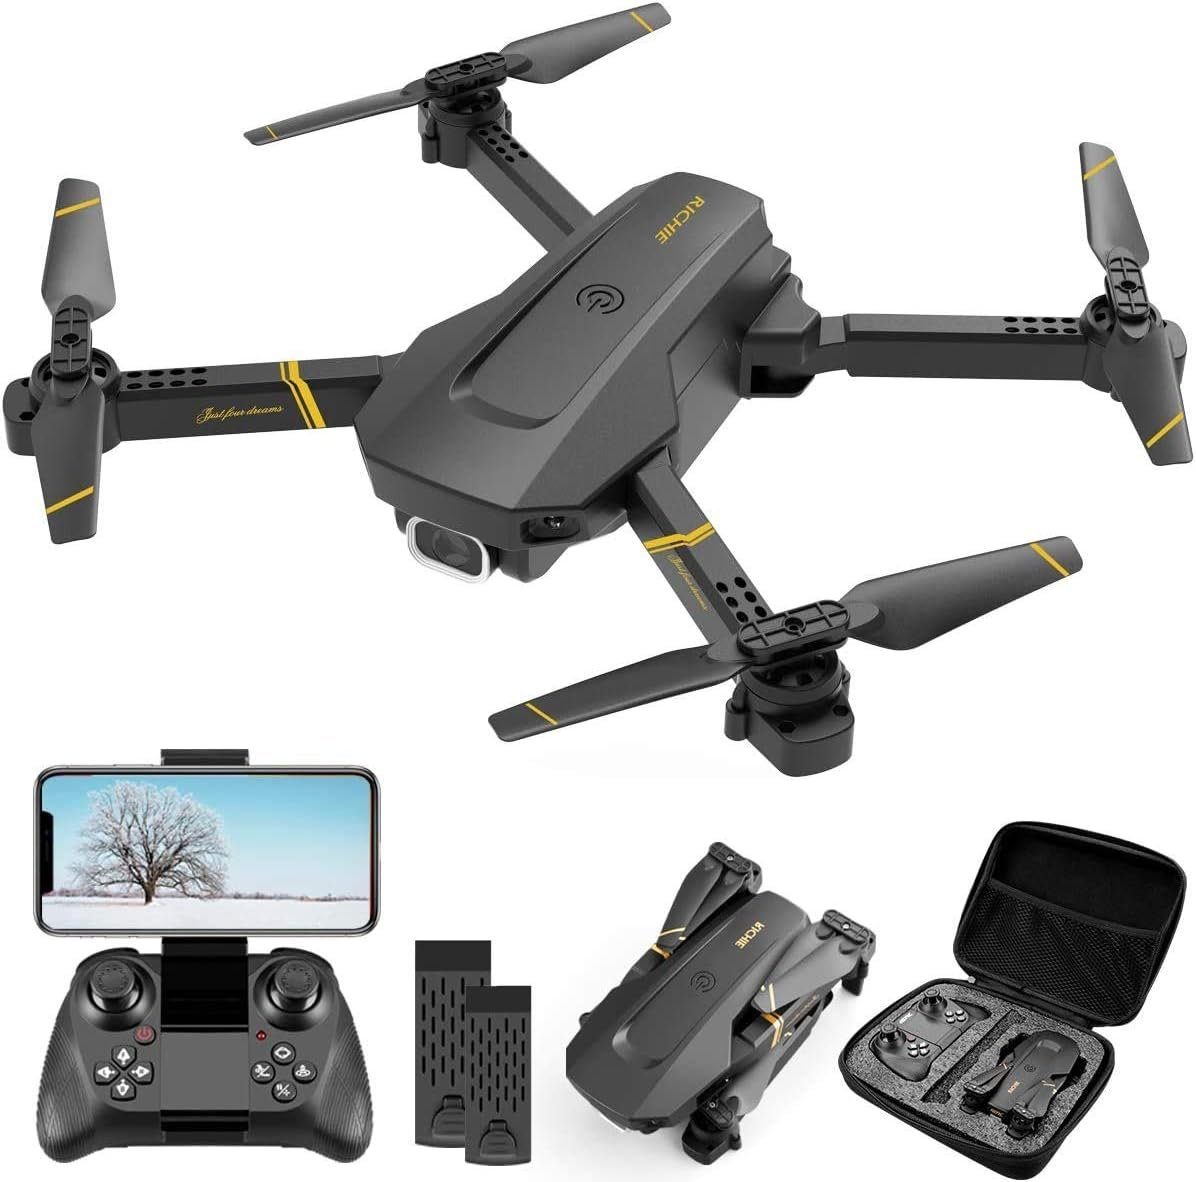 4DRC für Kinder & Anfänger, klappbarer Quadcopter Spielzeug-Drohne (1080P HD, v4, 32 Minuten Flugzeit, FPV-Live-Video, automatischer Schwebeflug) Schwarz